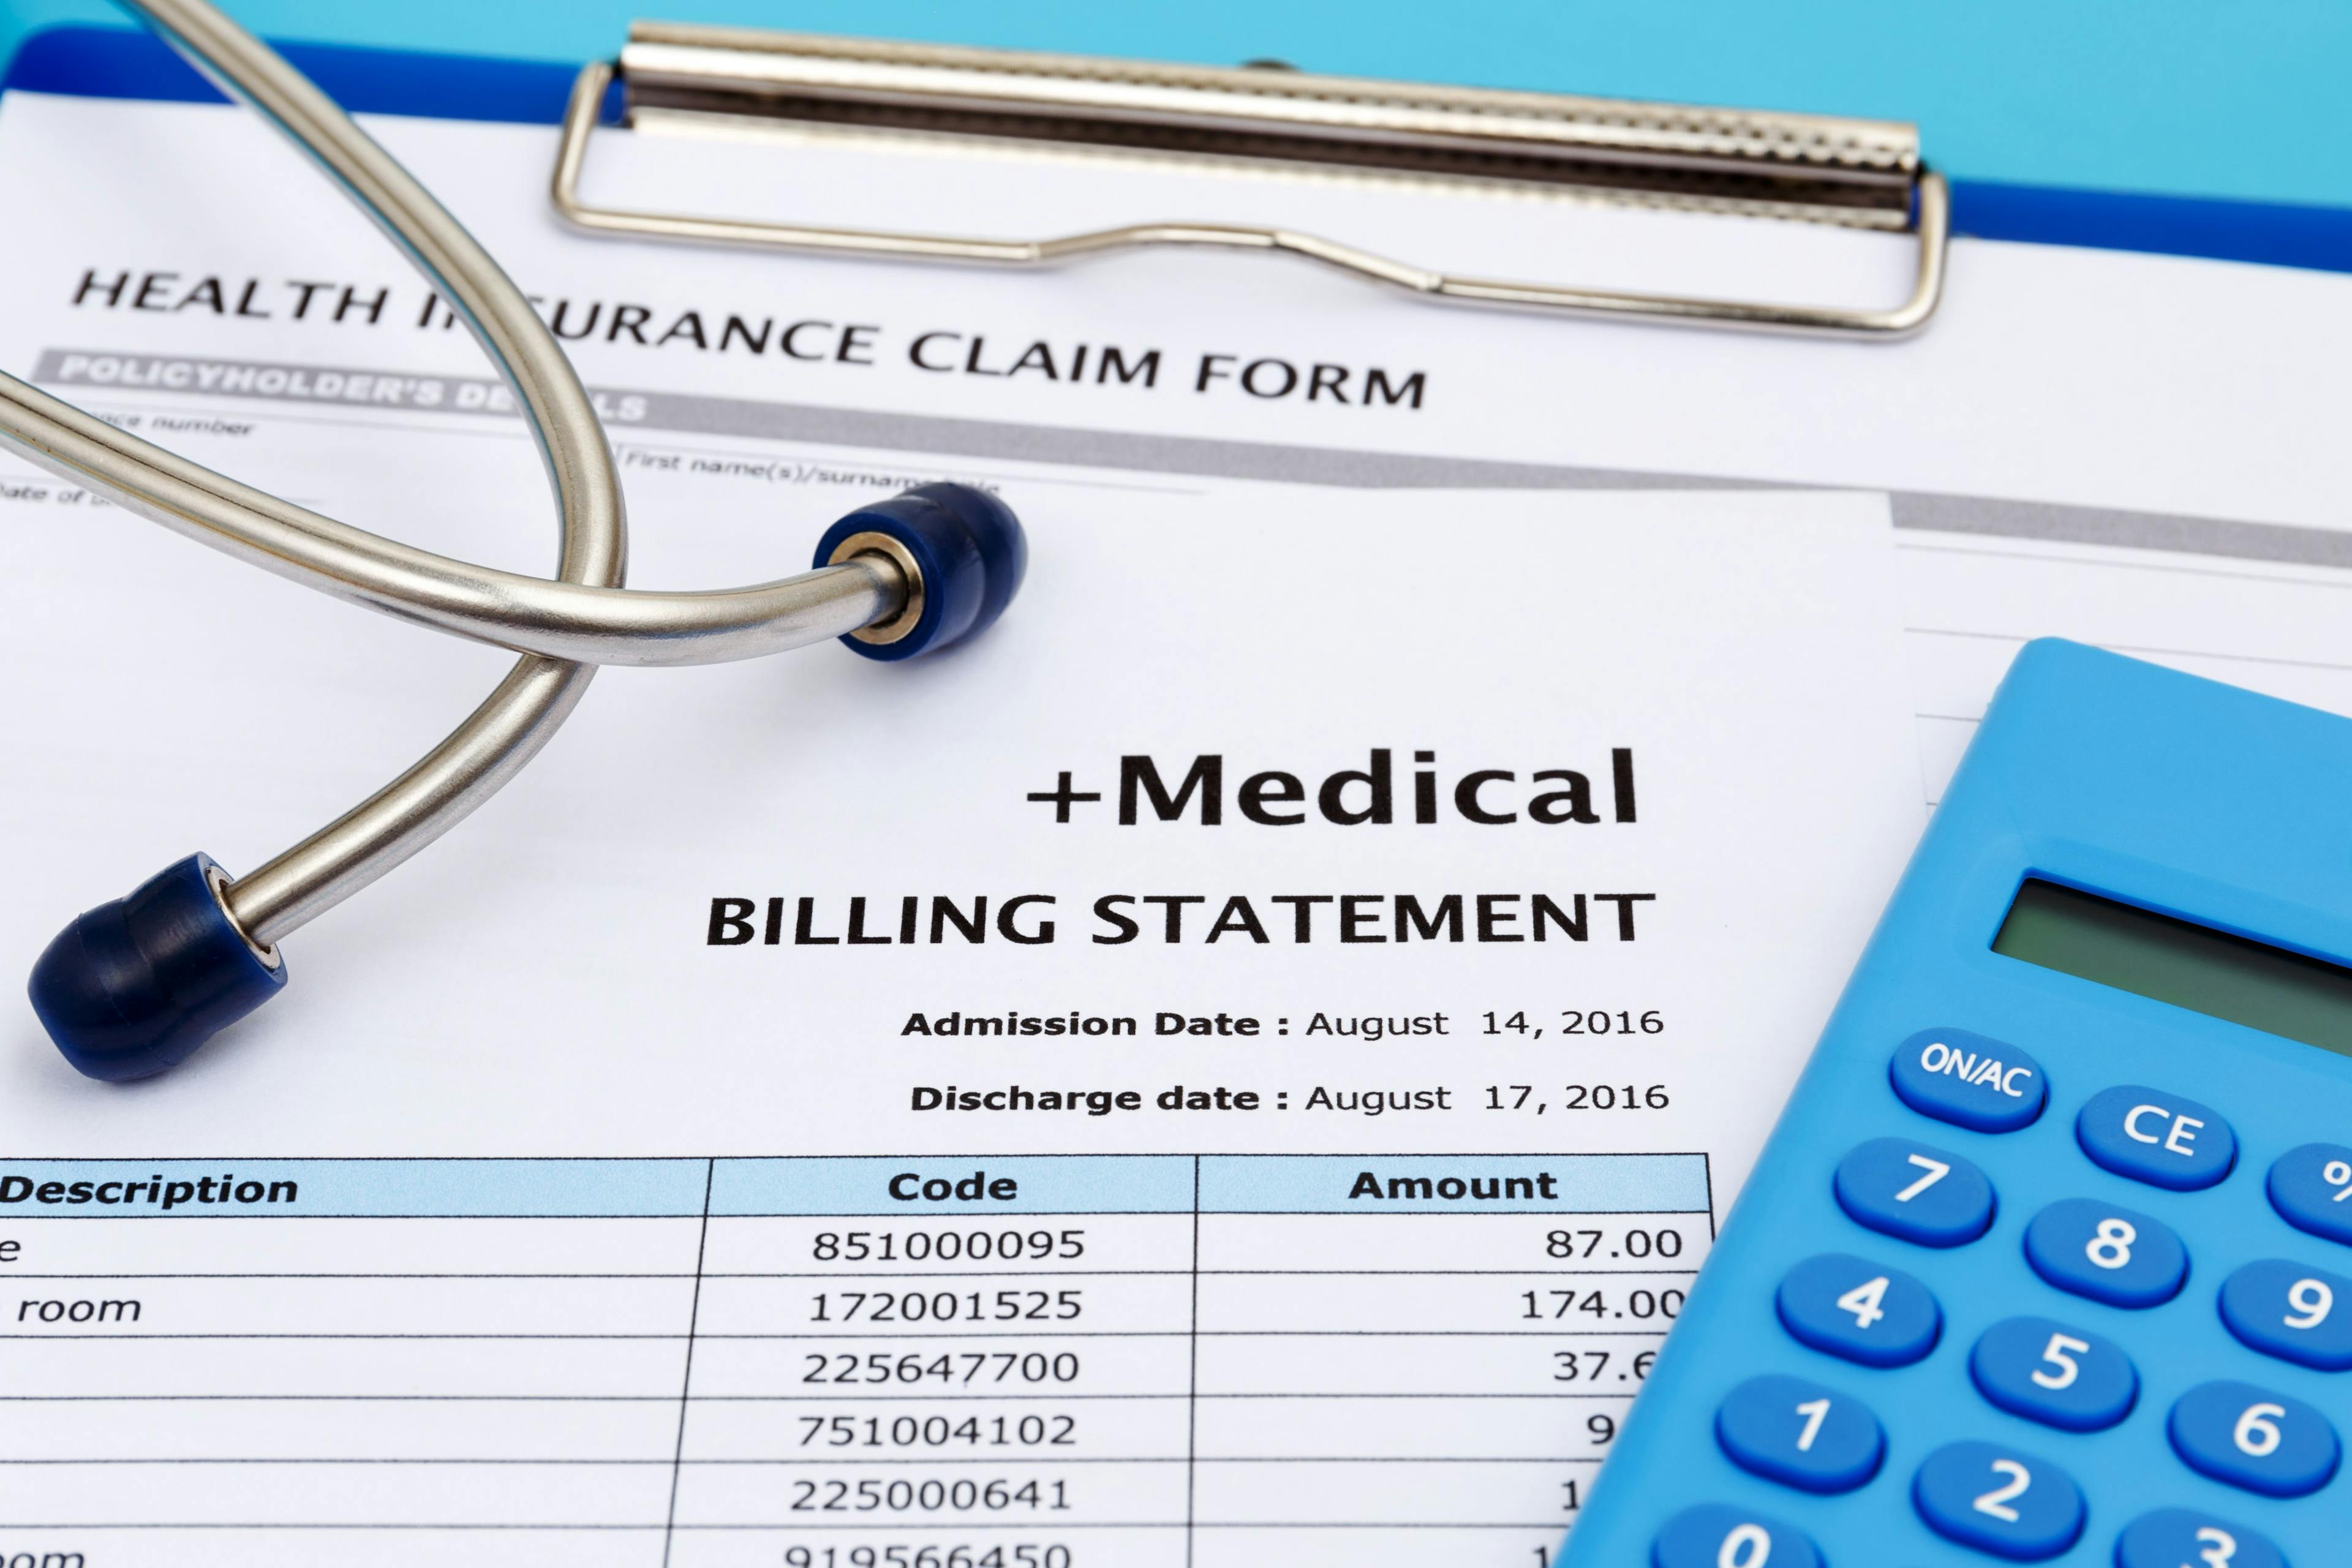 New E/M billing guidelines rewarding longer patient visits